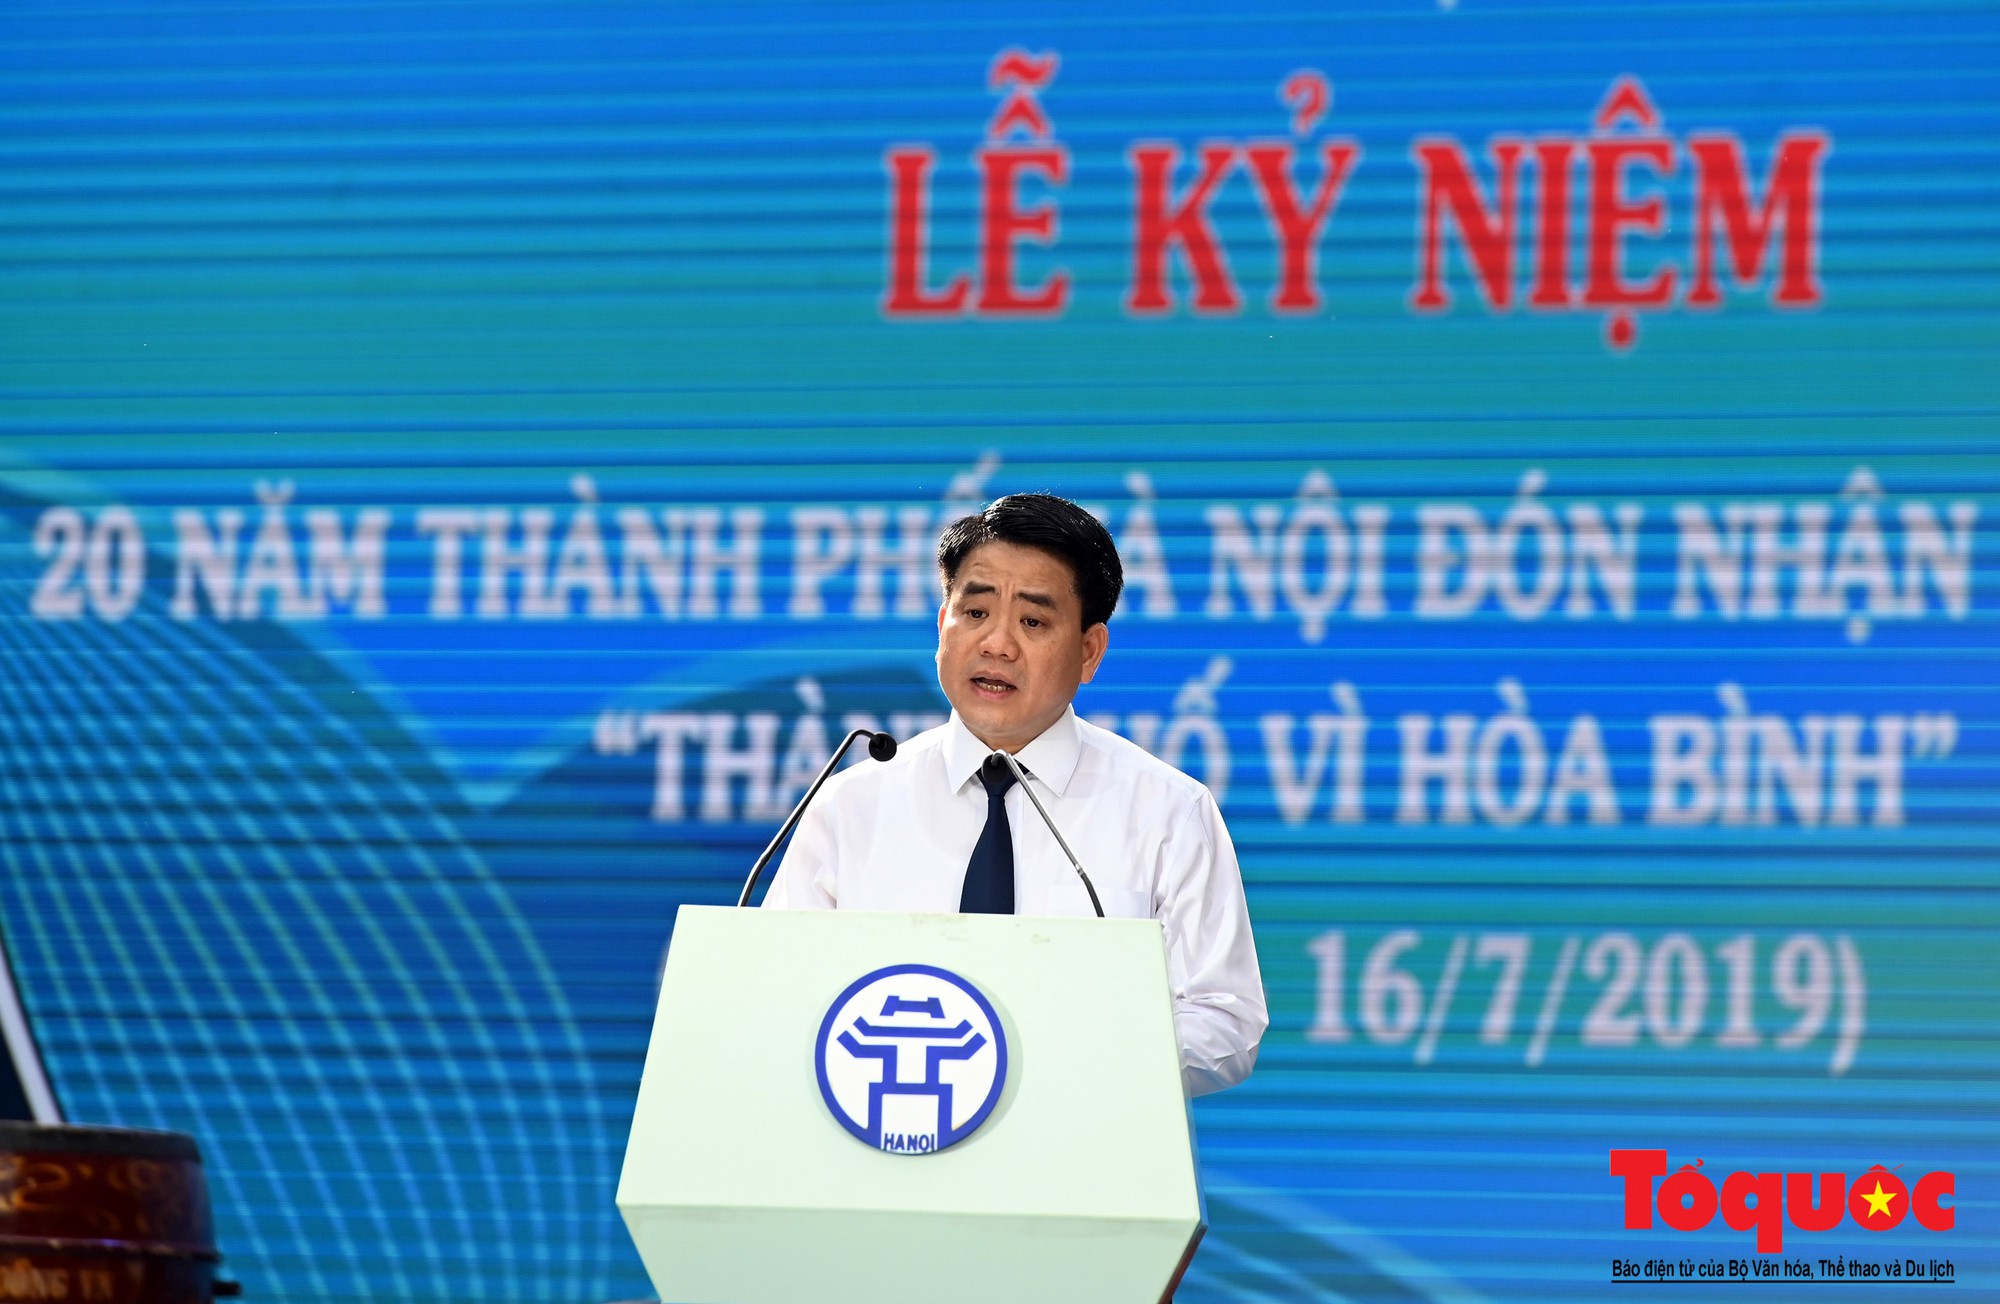 Lễ kỷ niệm 20 năm thành phố Hà Nội đón nhận danh hiệu “Thành phố Vì hòa bình” (1)